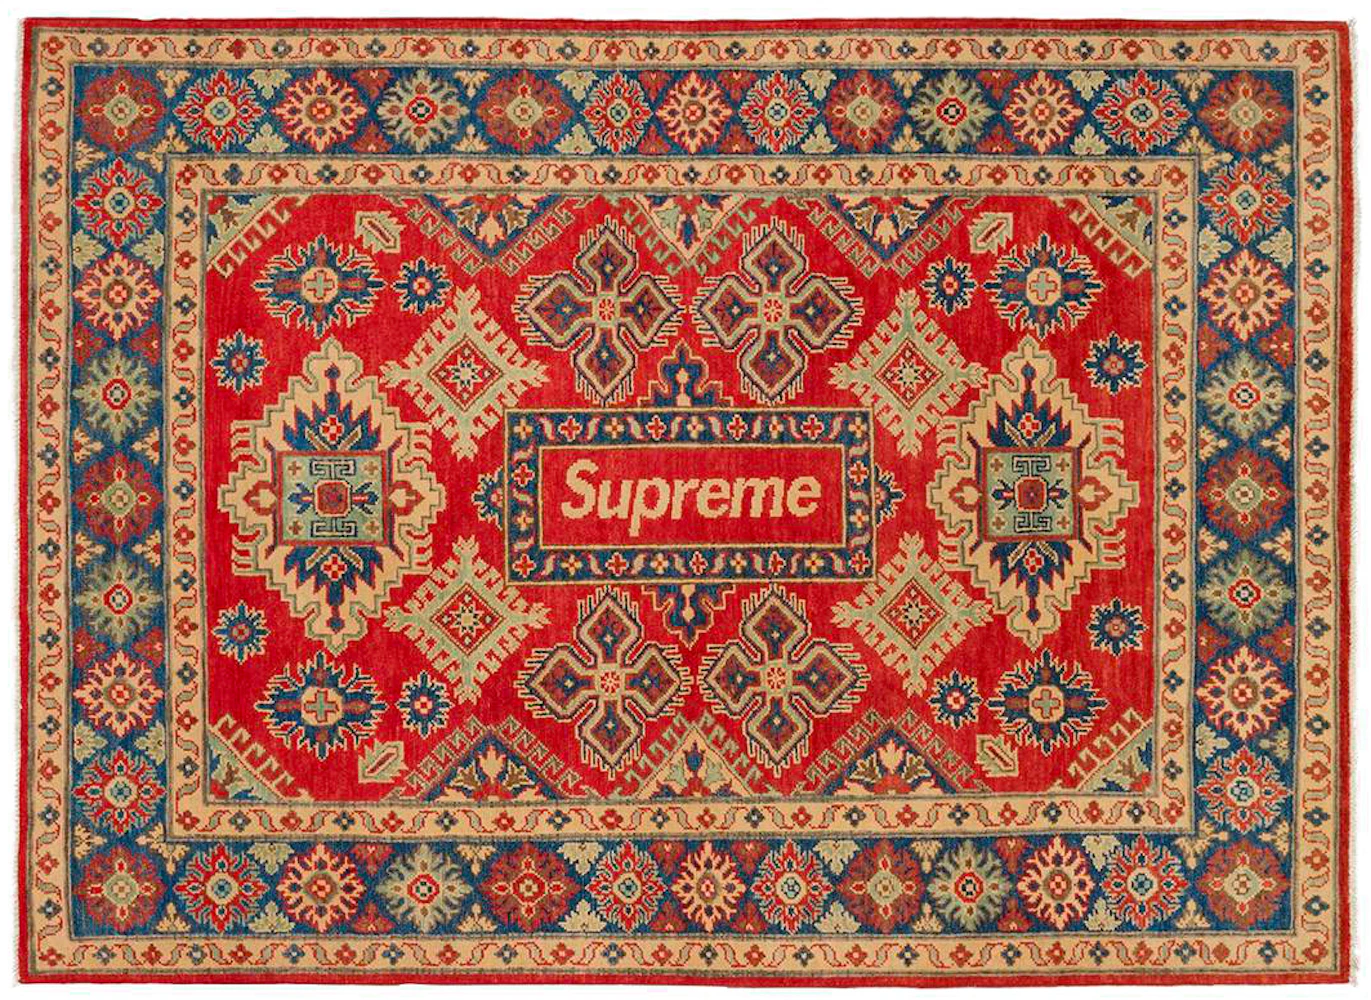 Supreme rug